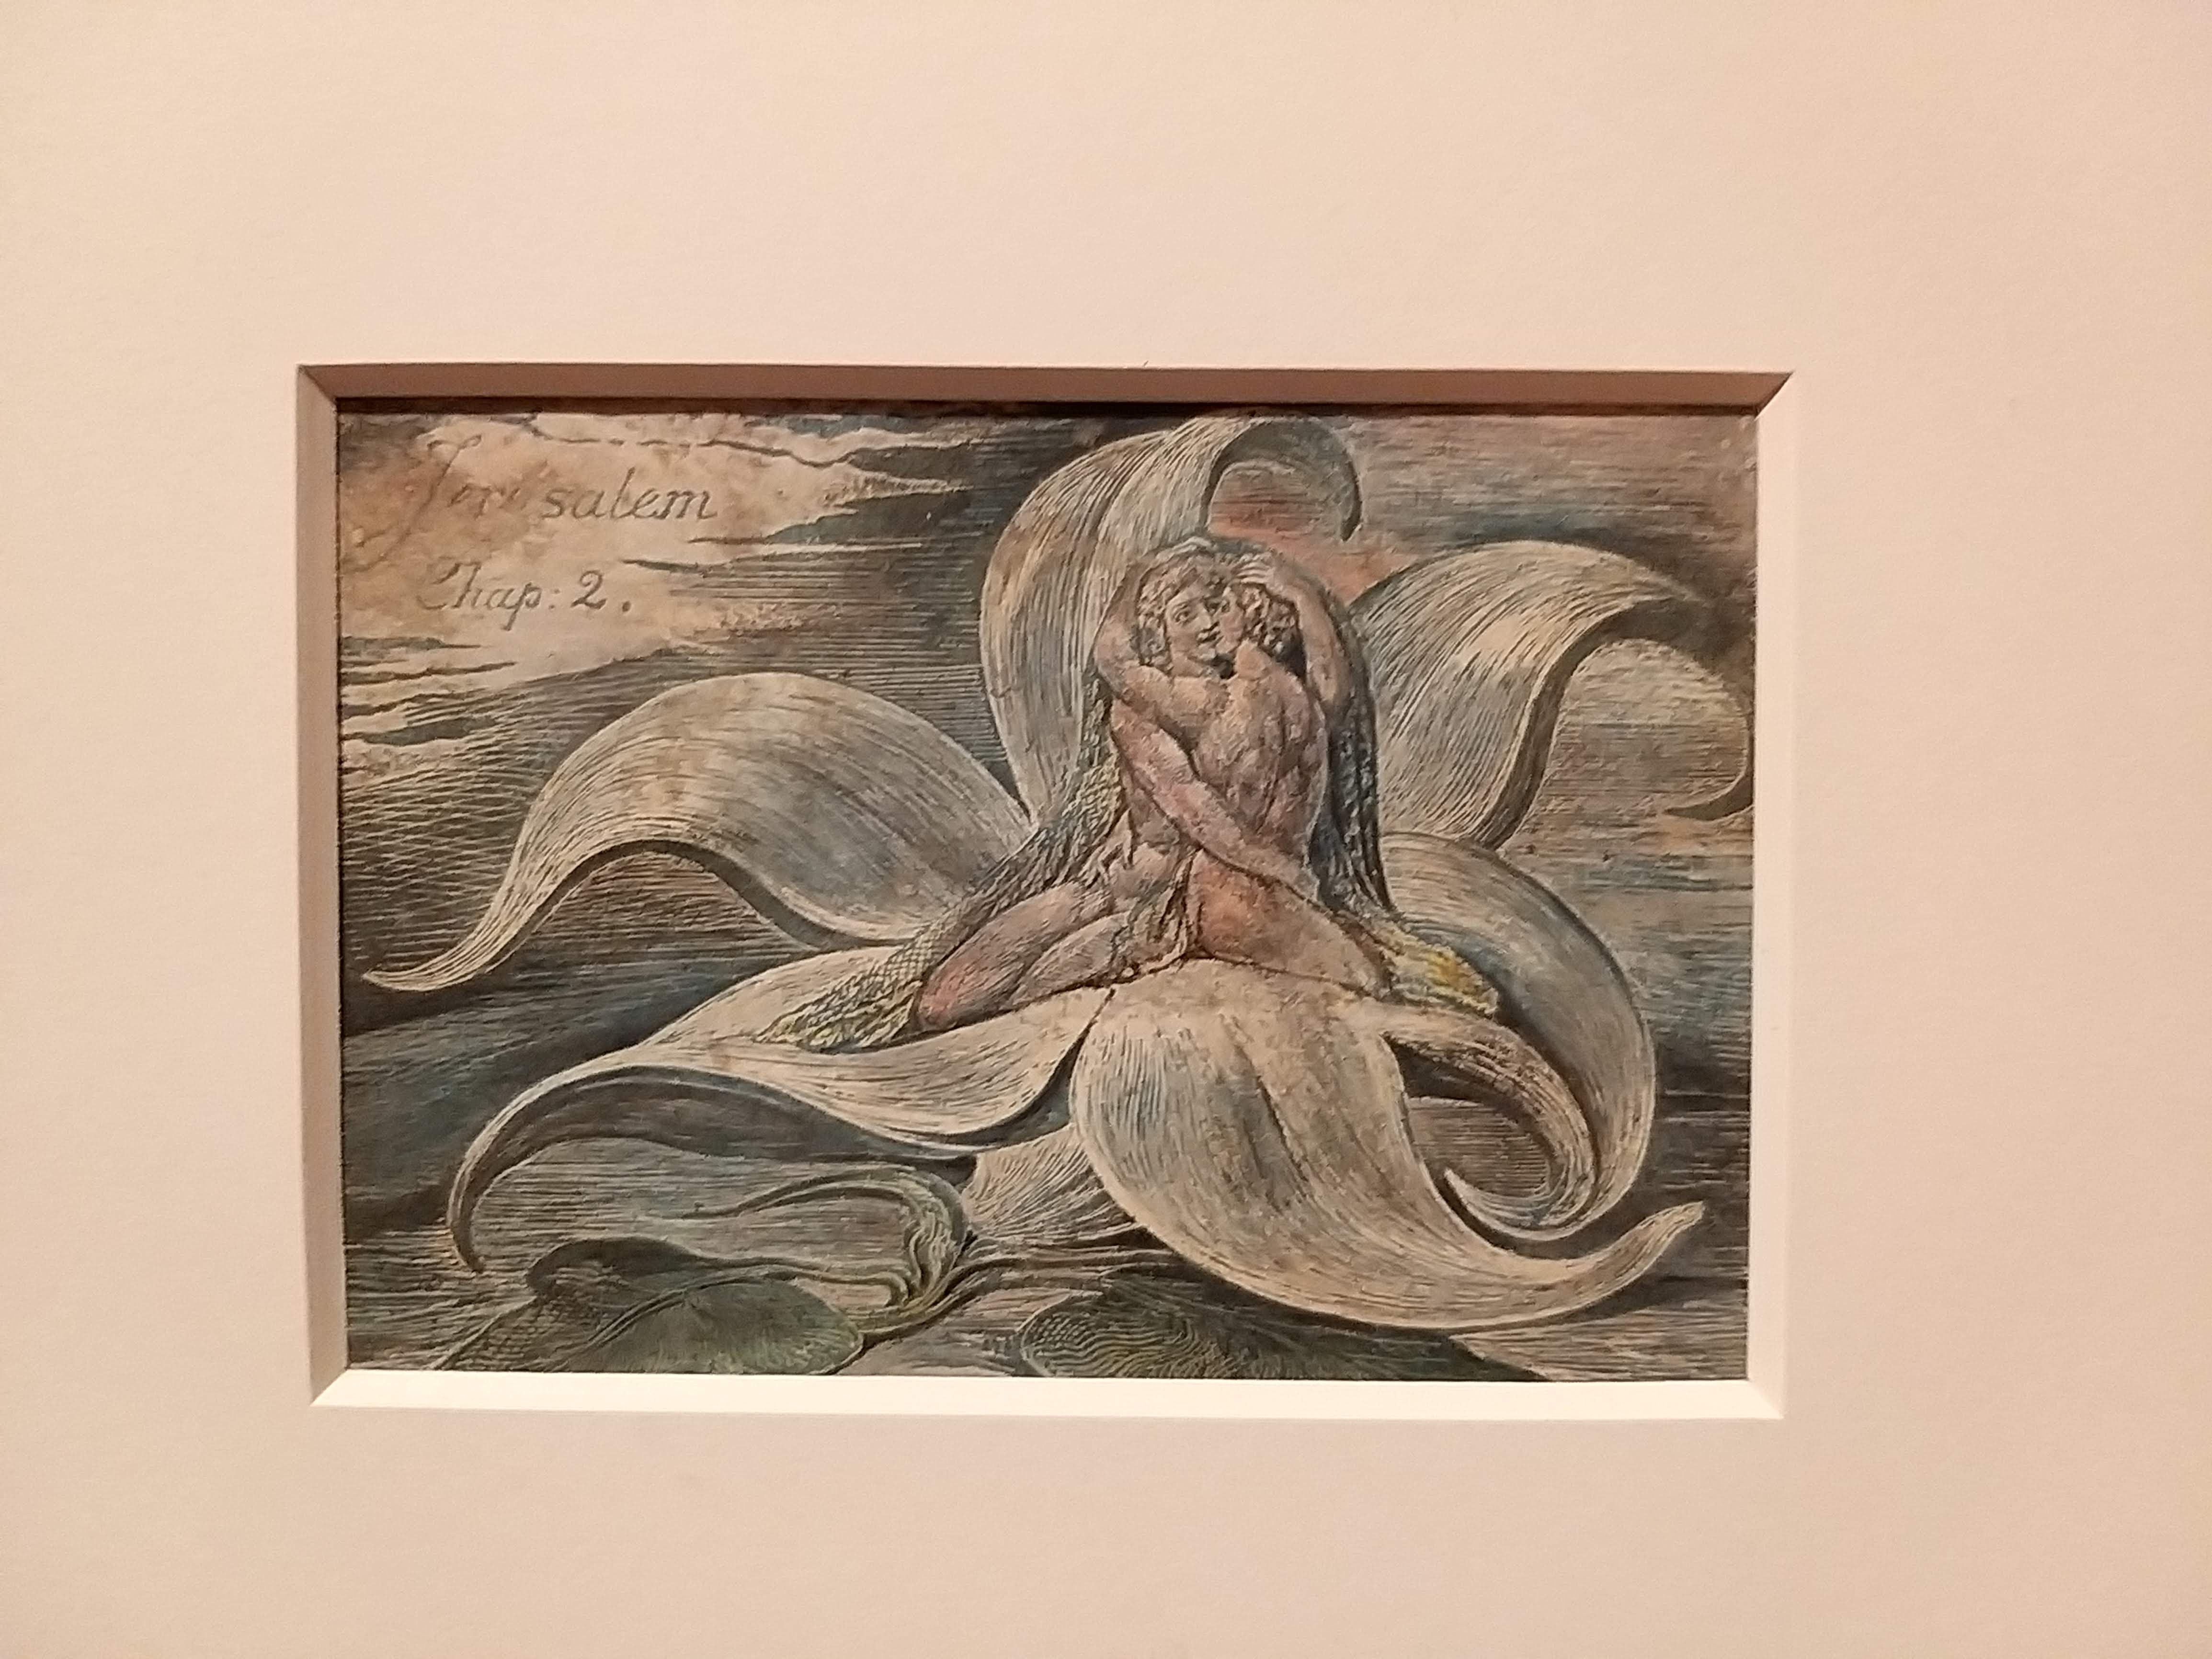 William Blake exhibition